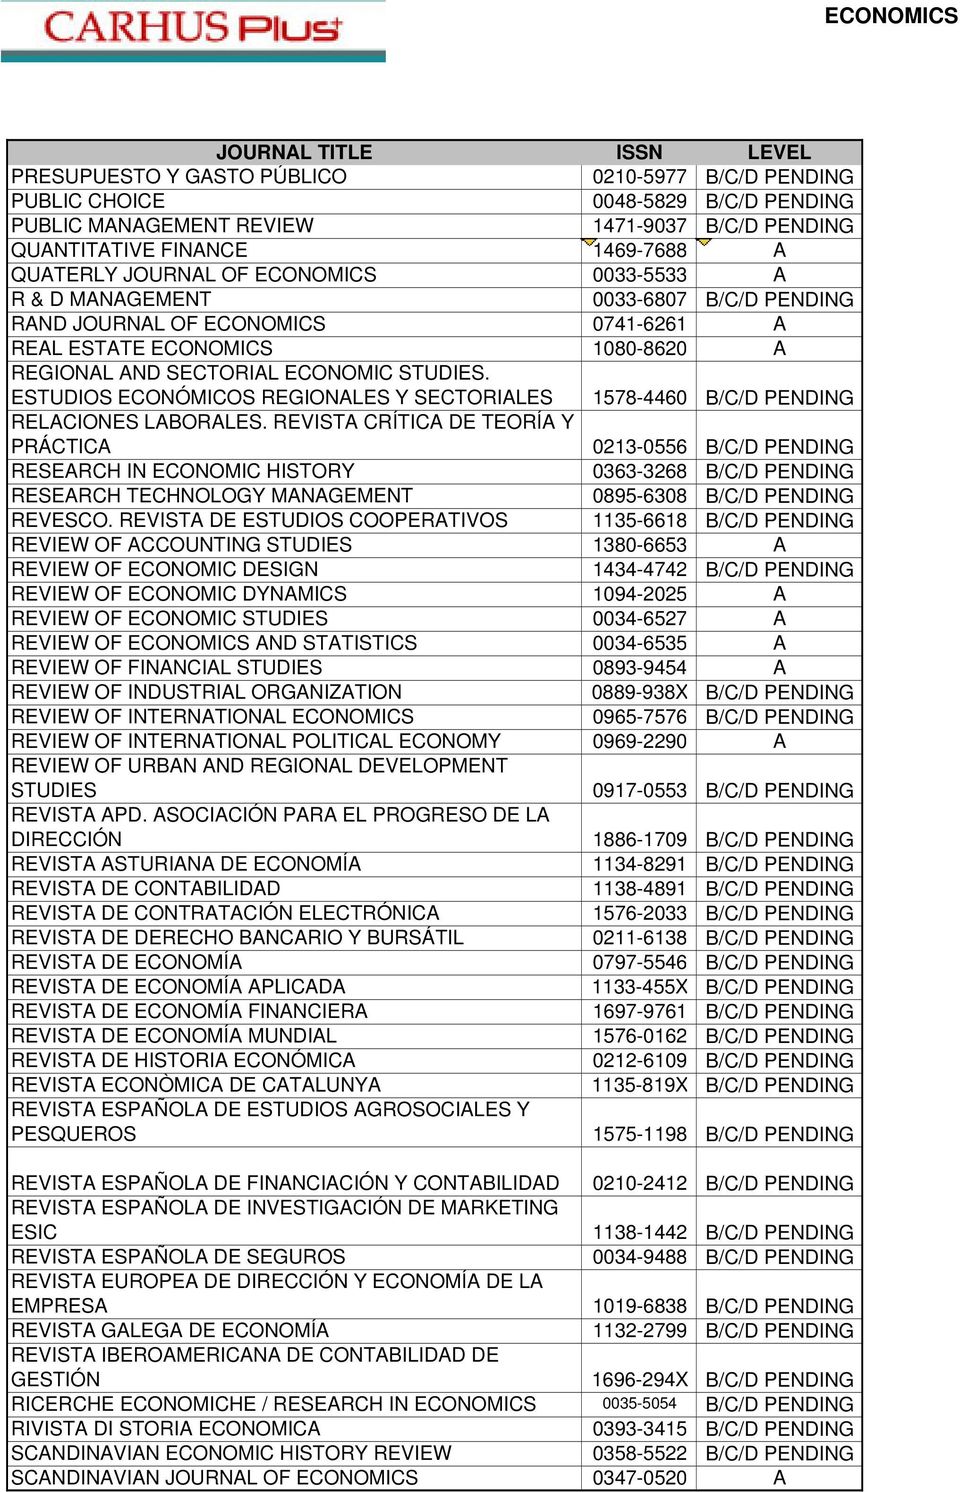 ESTUDIOS ECONÓMICOS REGIONALES Y SECTORIALES 1578-4460 B/C/D PENDING RELACIONES LABORALES.